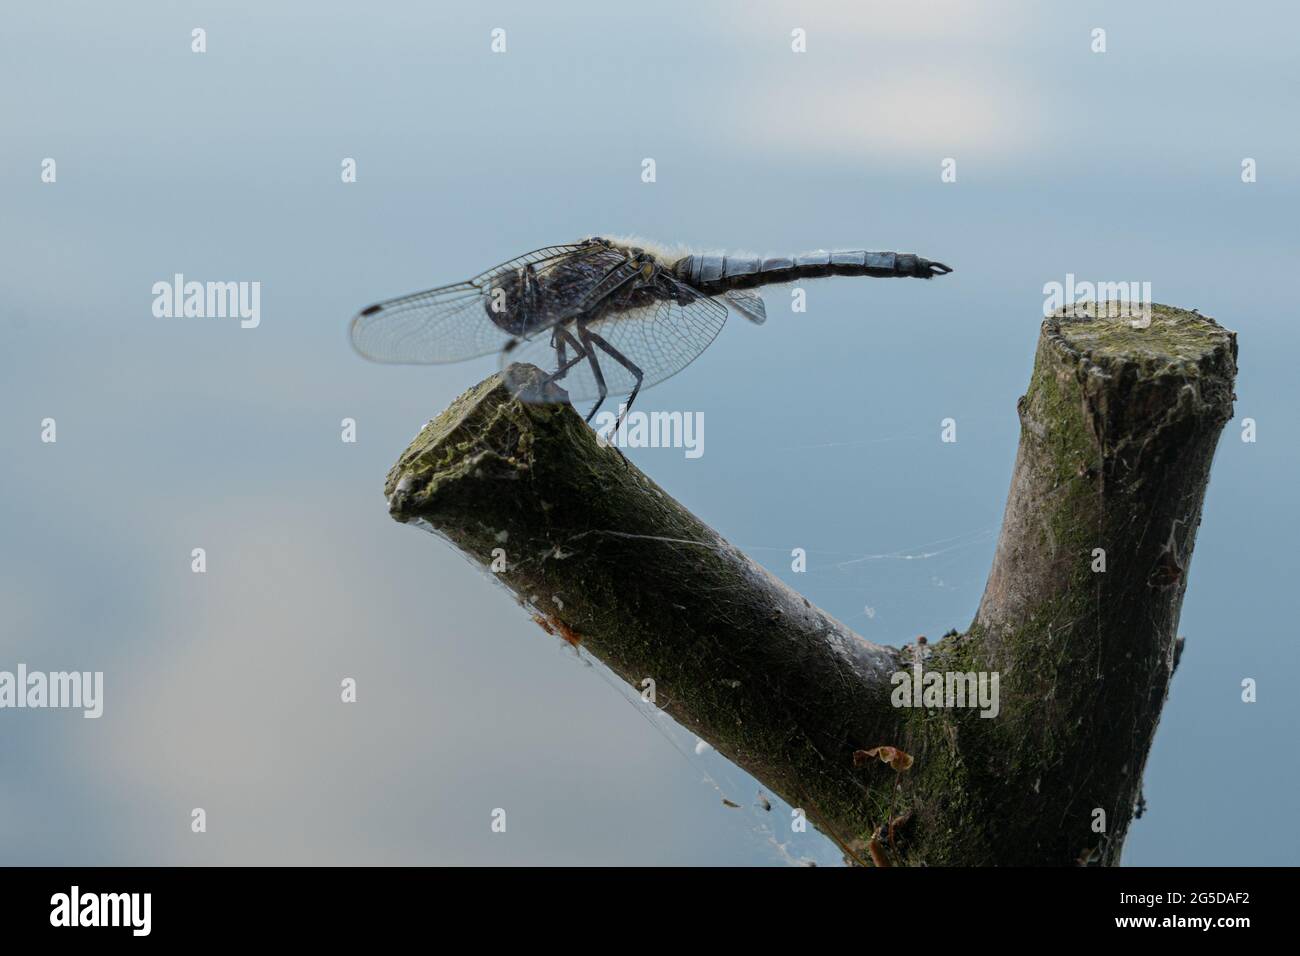 Dragonfly at Kalwa lake, Mazury Stock Photo